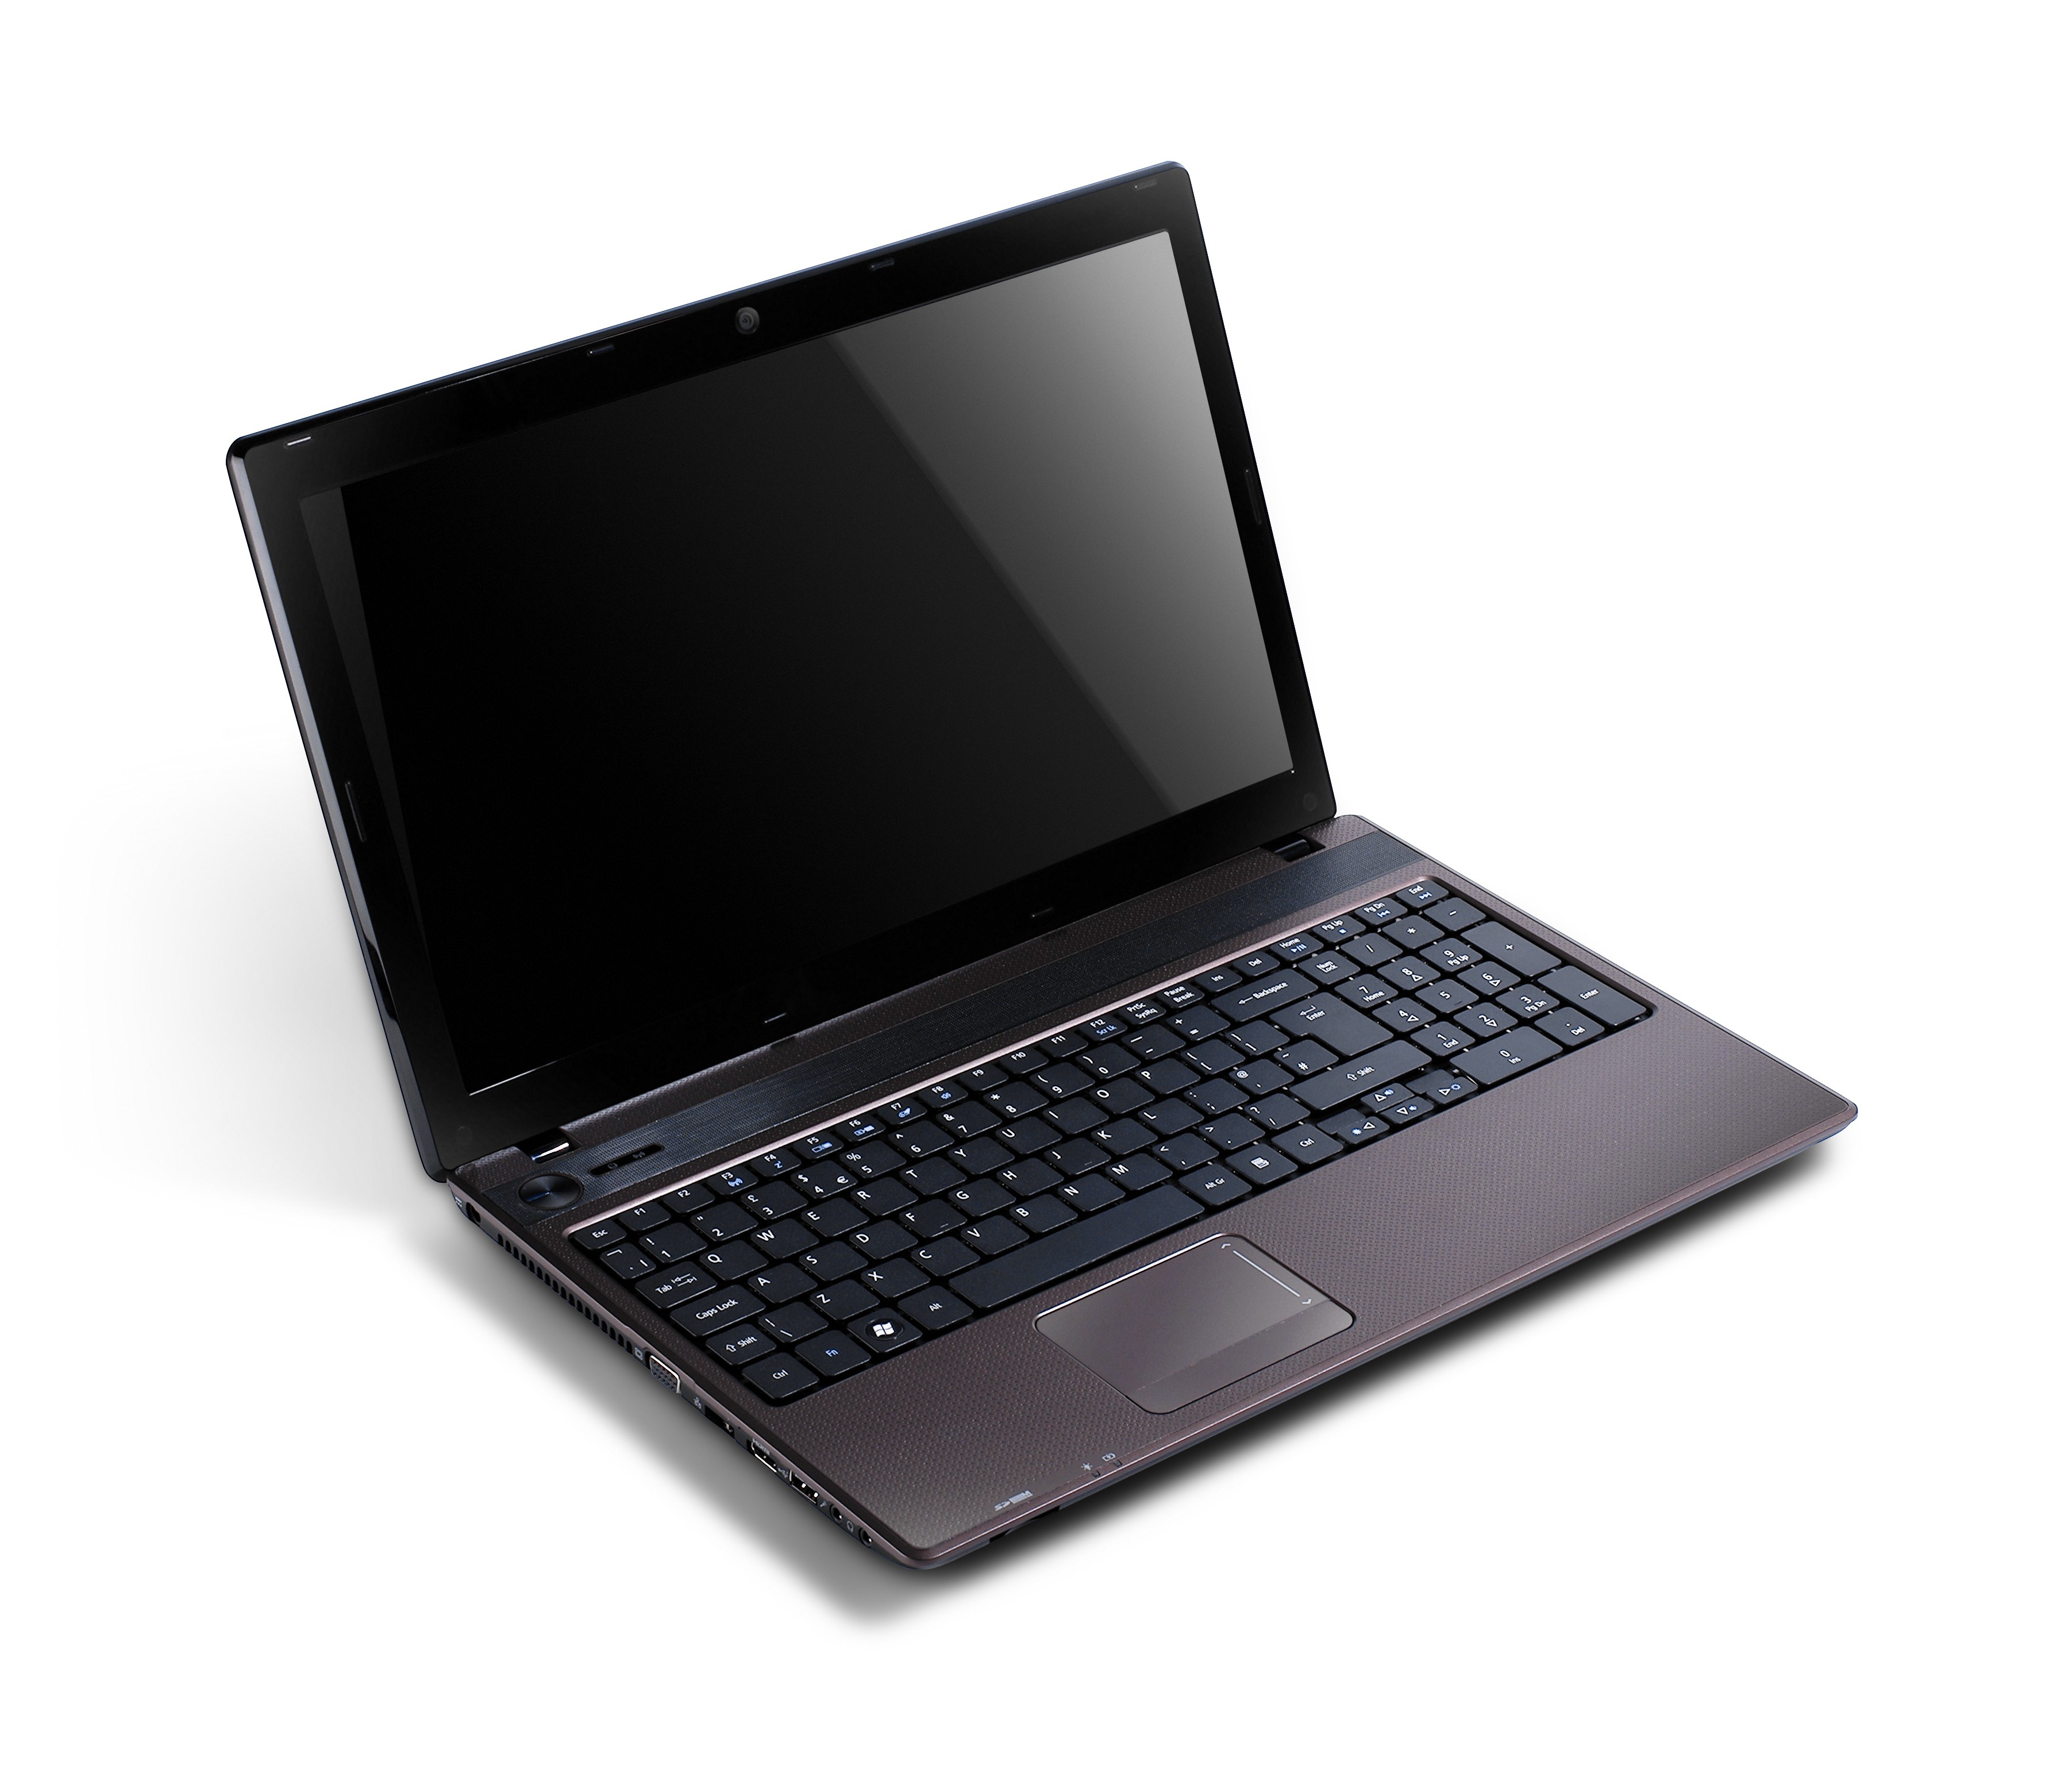 Купить Ноутбук Acer 5742g